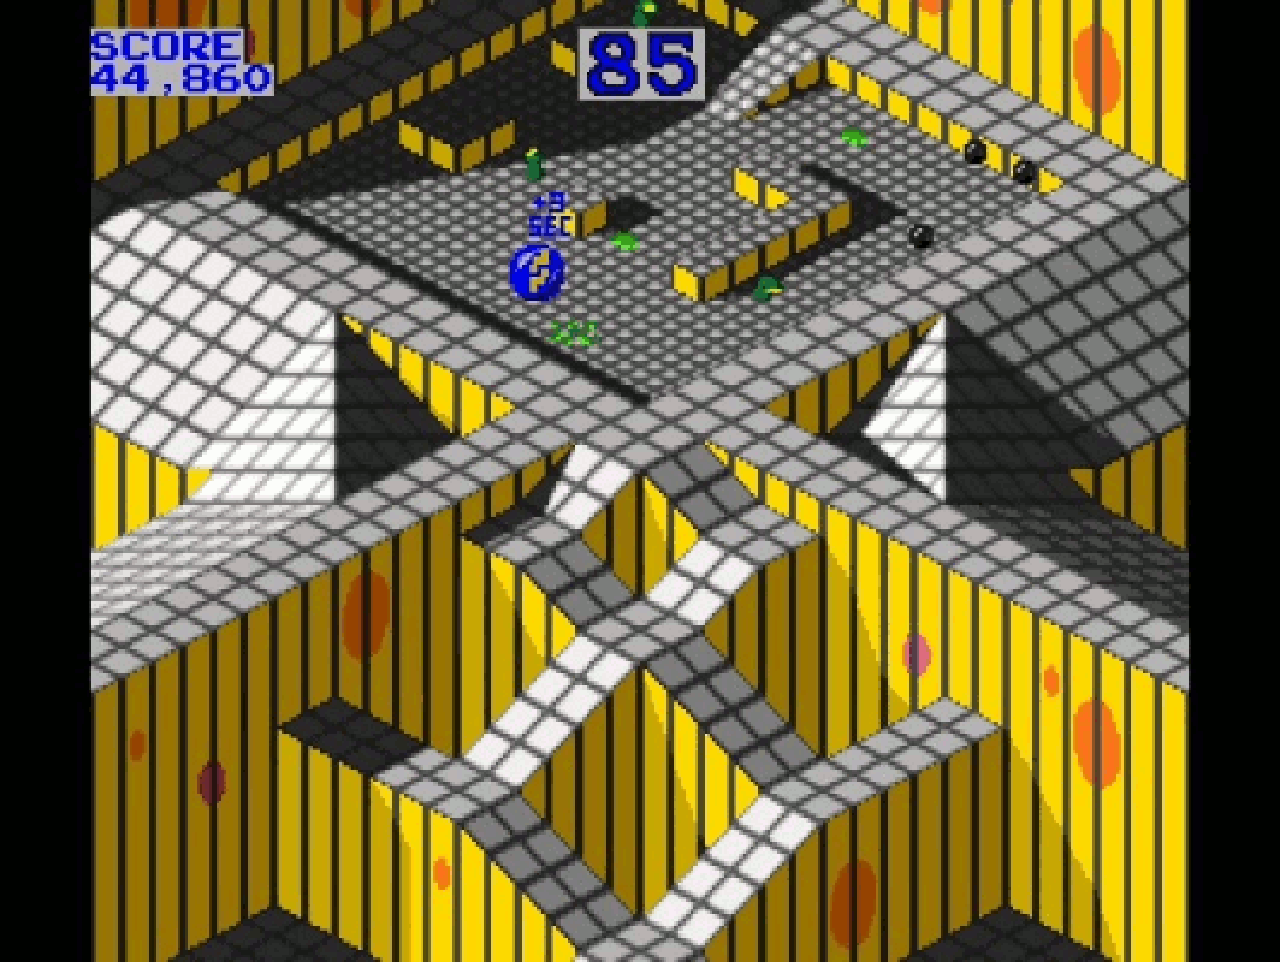 Die Murmel wurde beim Automaten präzise mit dem Trackball gesteuert, beim Amiga dagegen mit der Maus. (Bild: Atari)